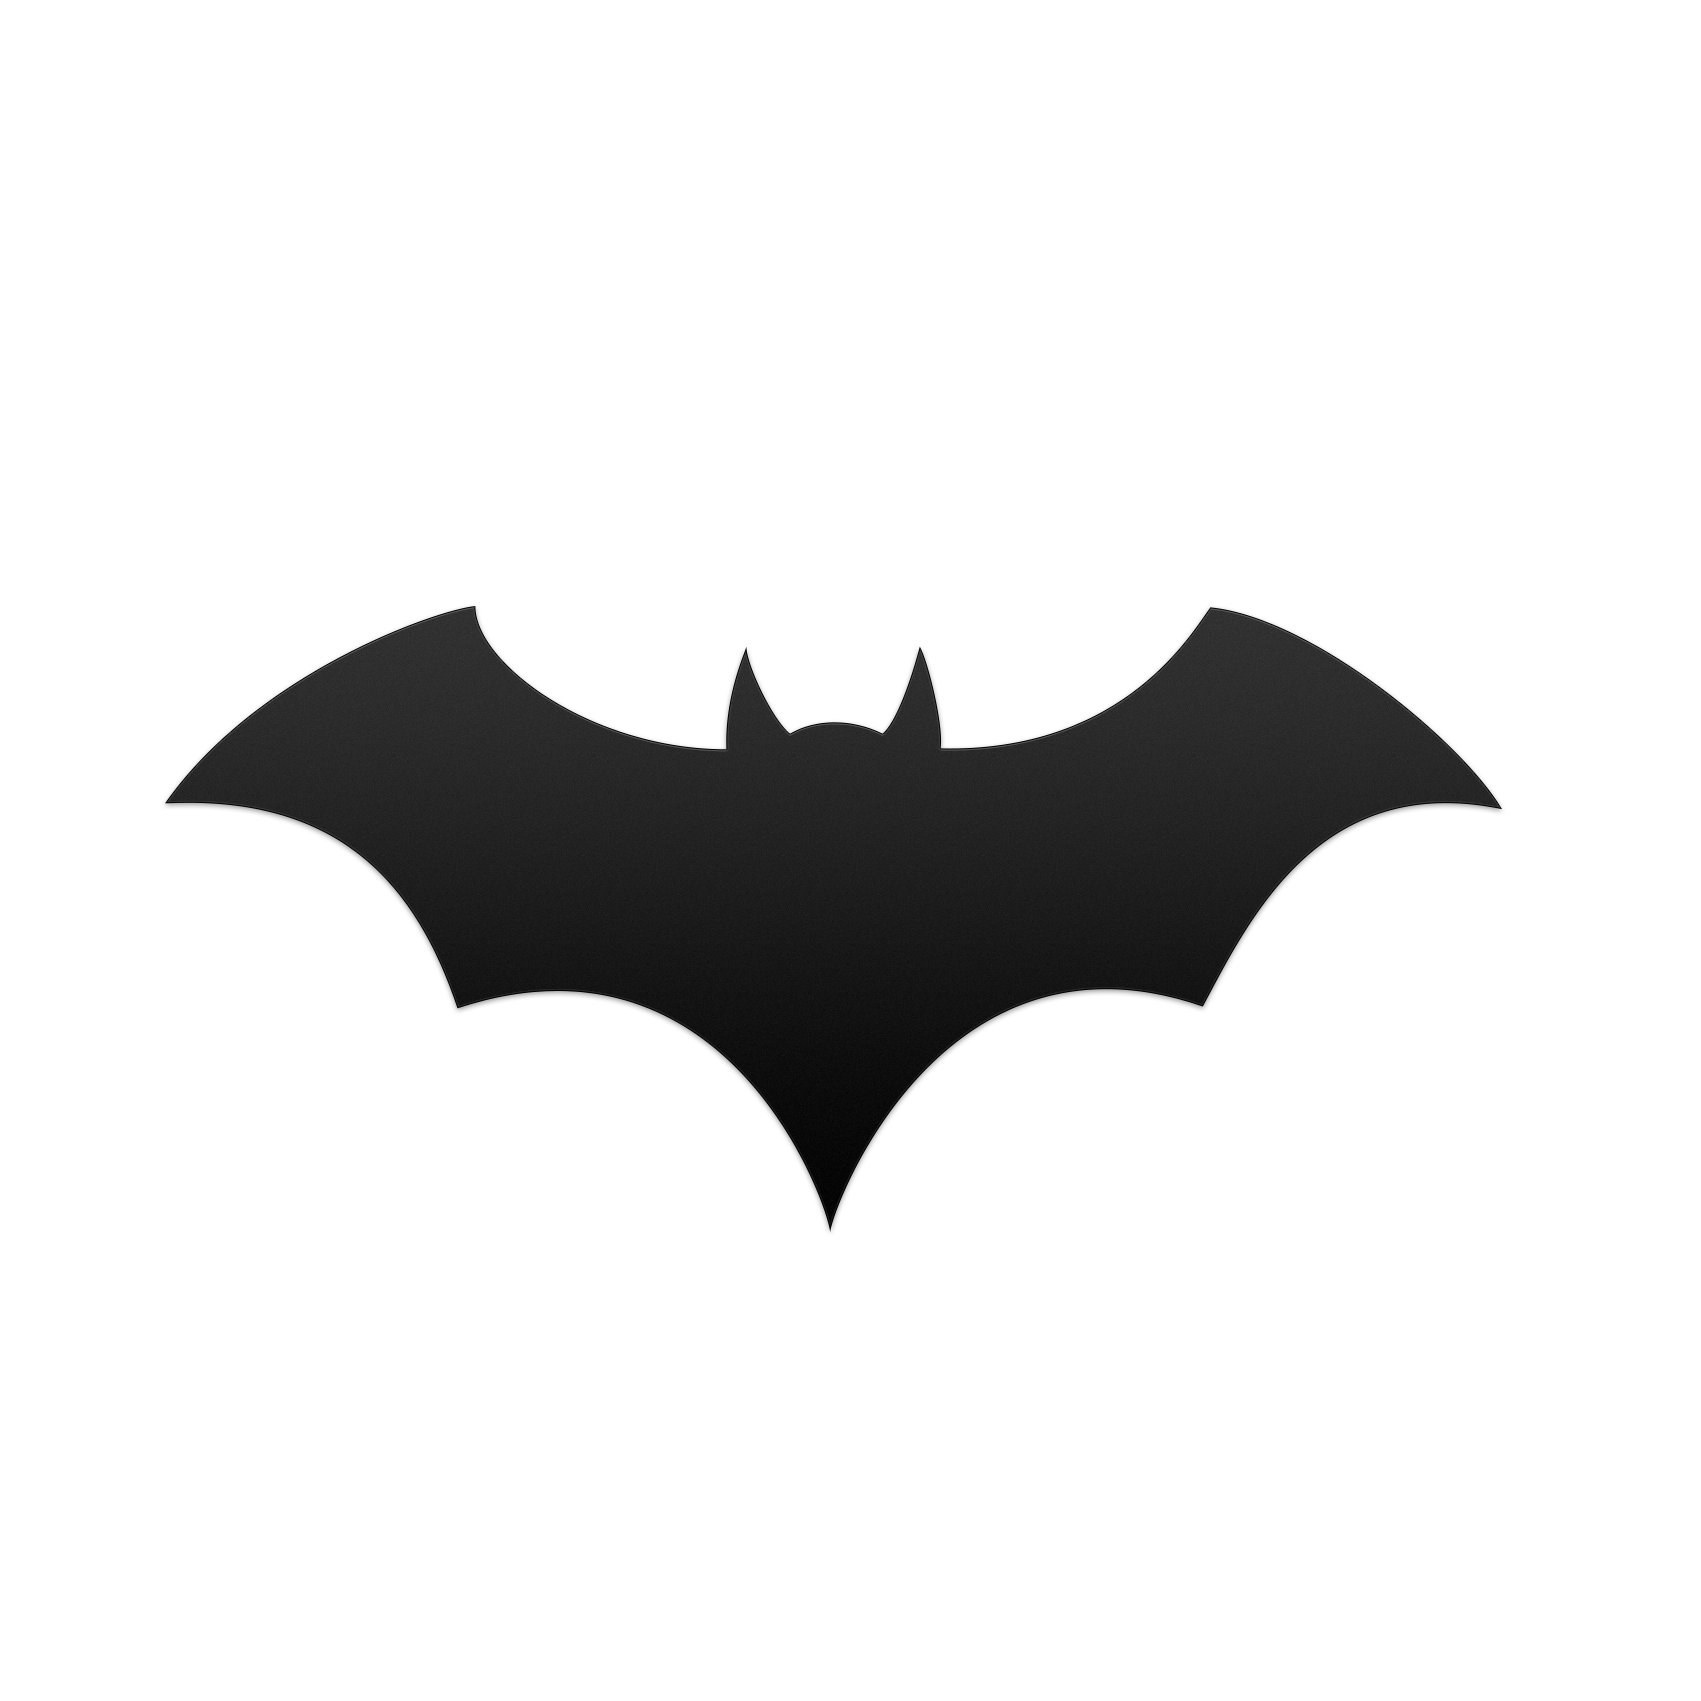 Bat Silhouette Icon - Batman png download - 1701*1701 - Free ...